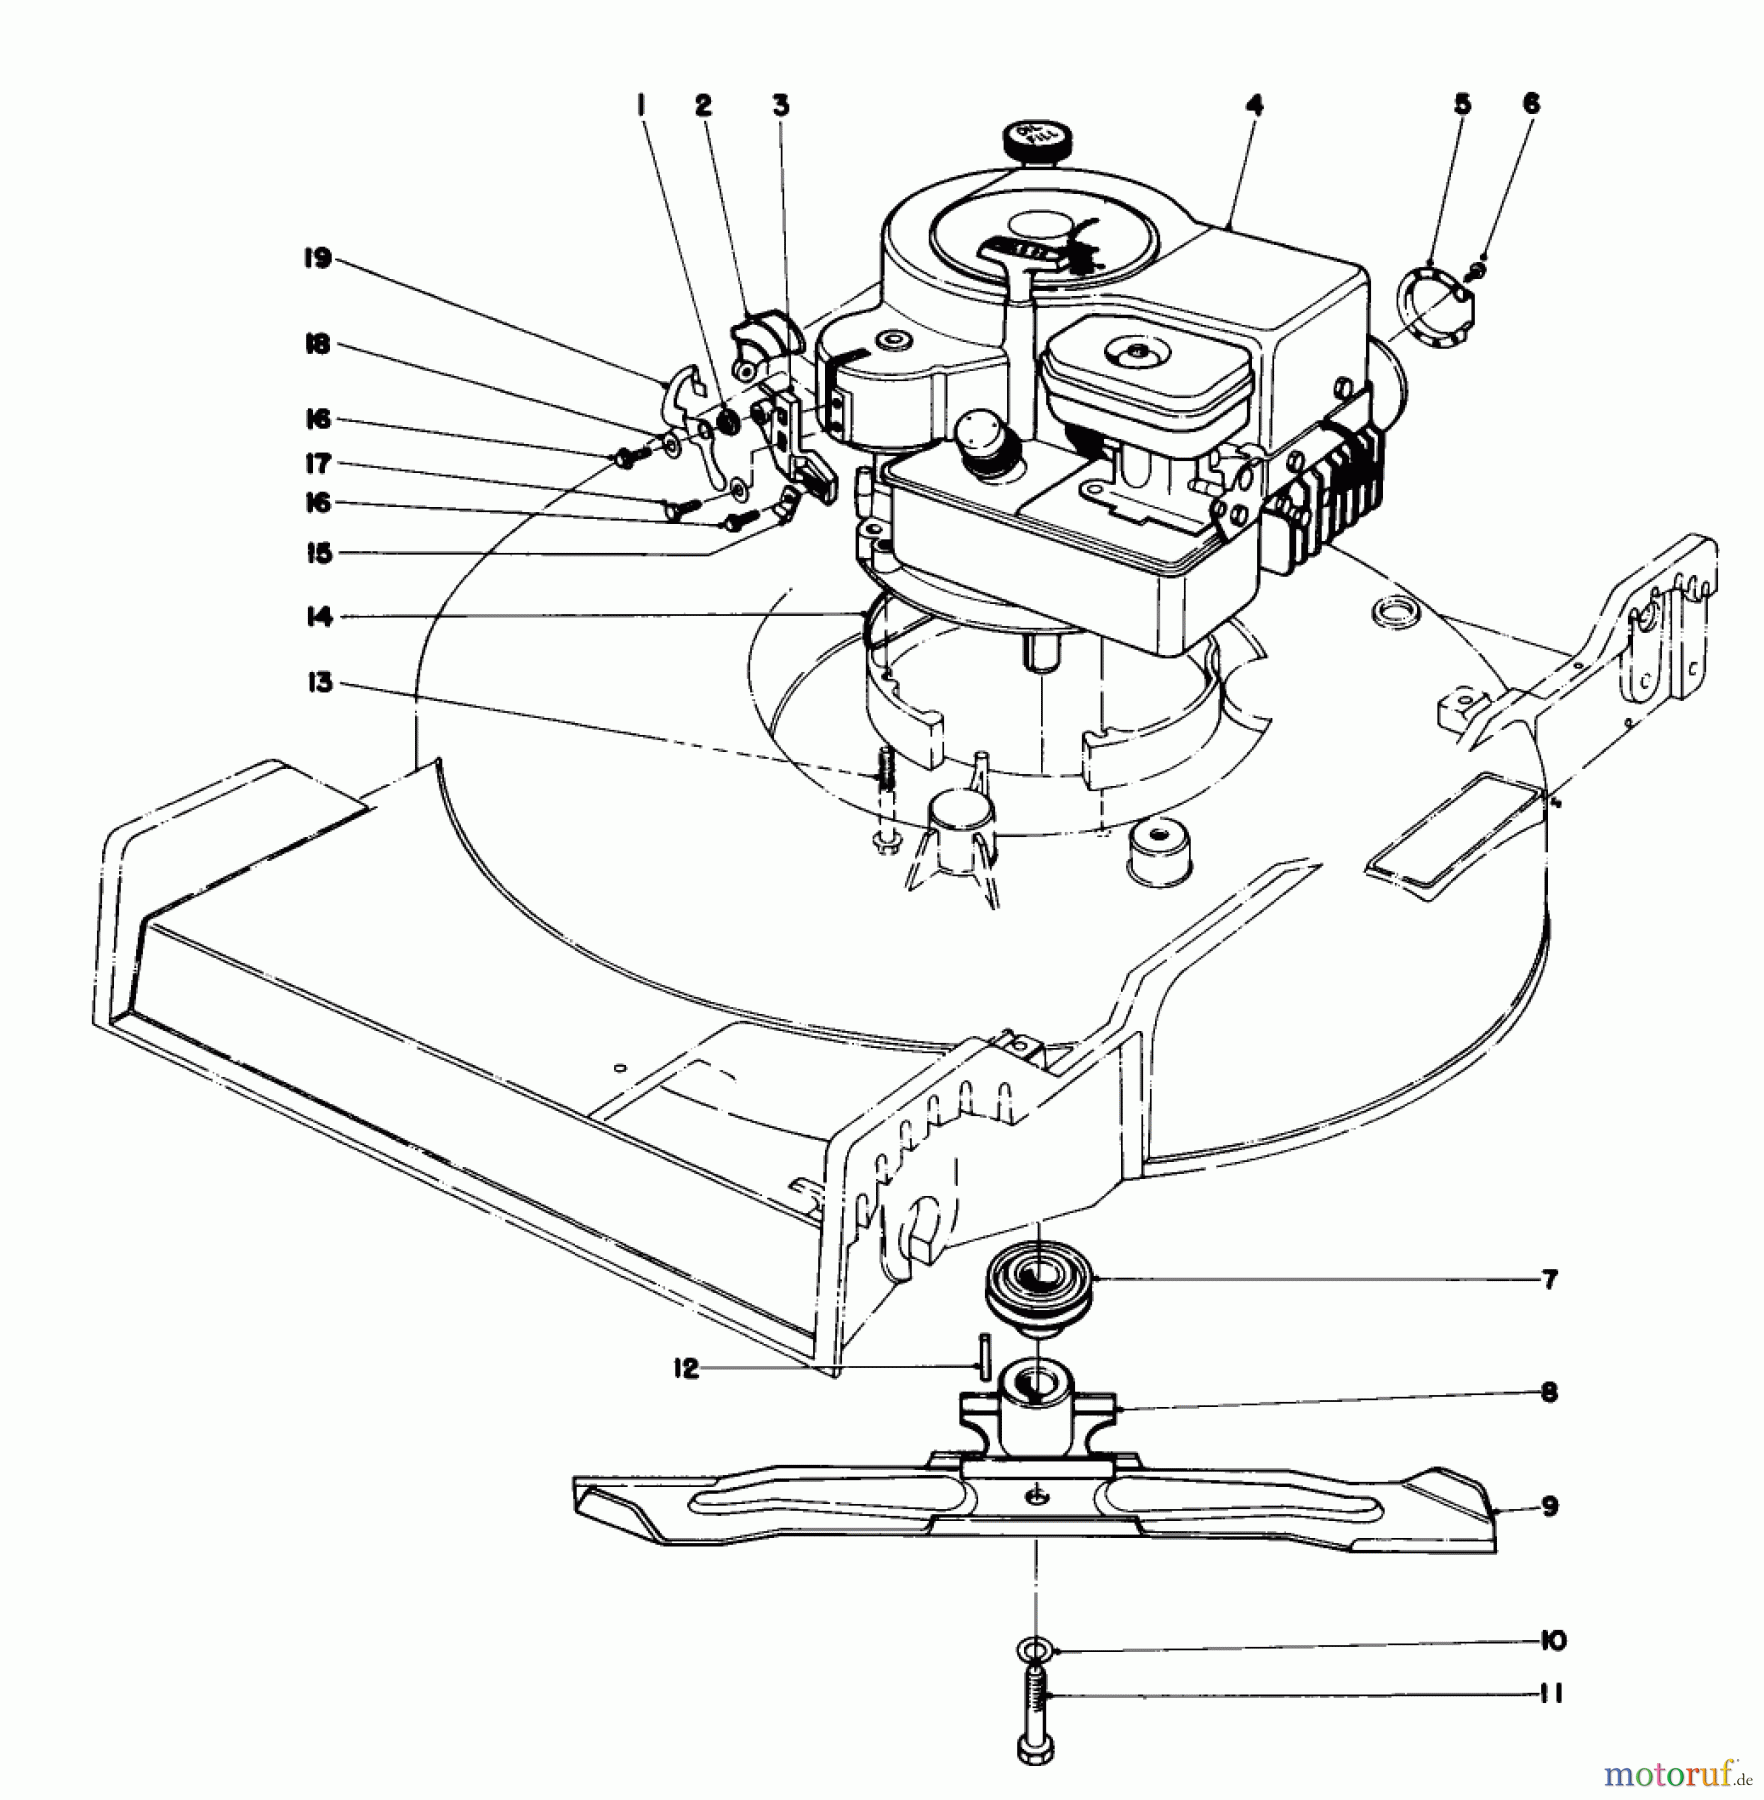  Toro Neu Mowers, Walk-Behind Seite 1 20755 - Toro Lawnmower, 1981 (1000001-1999999) ENGINE ASSEMBLY